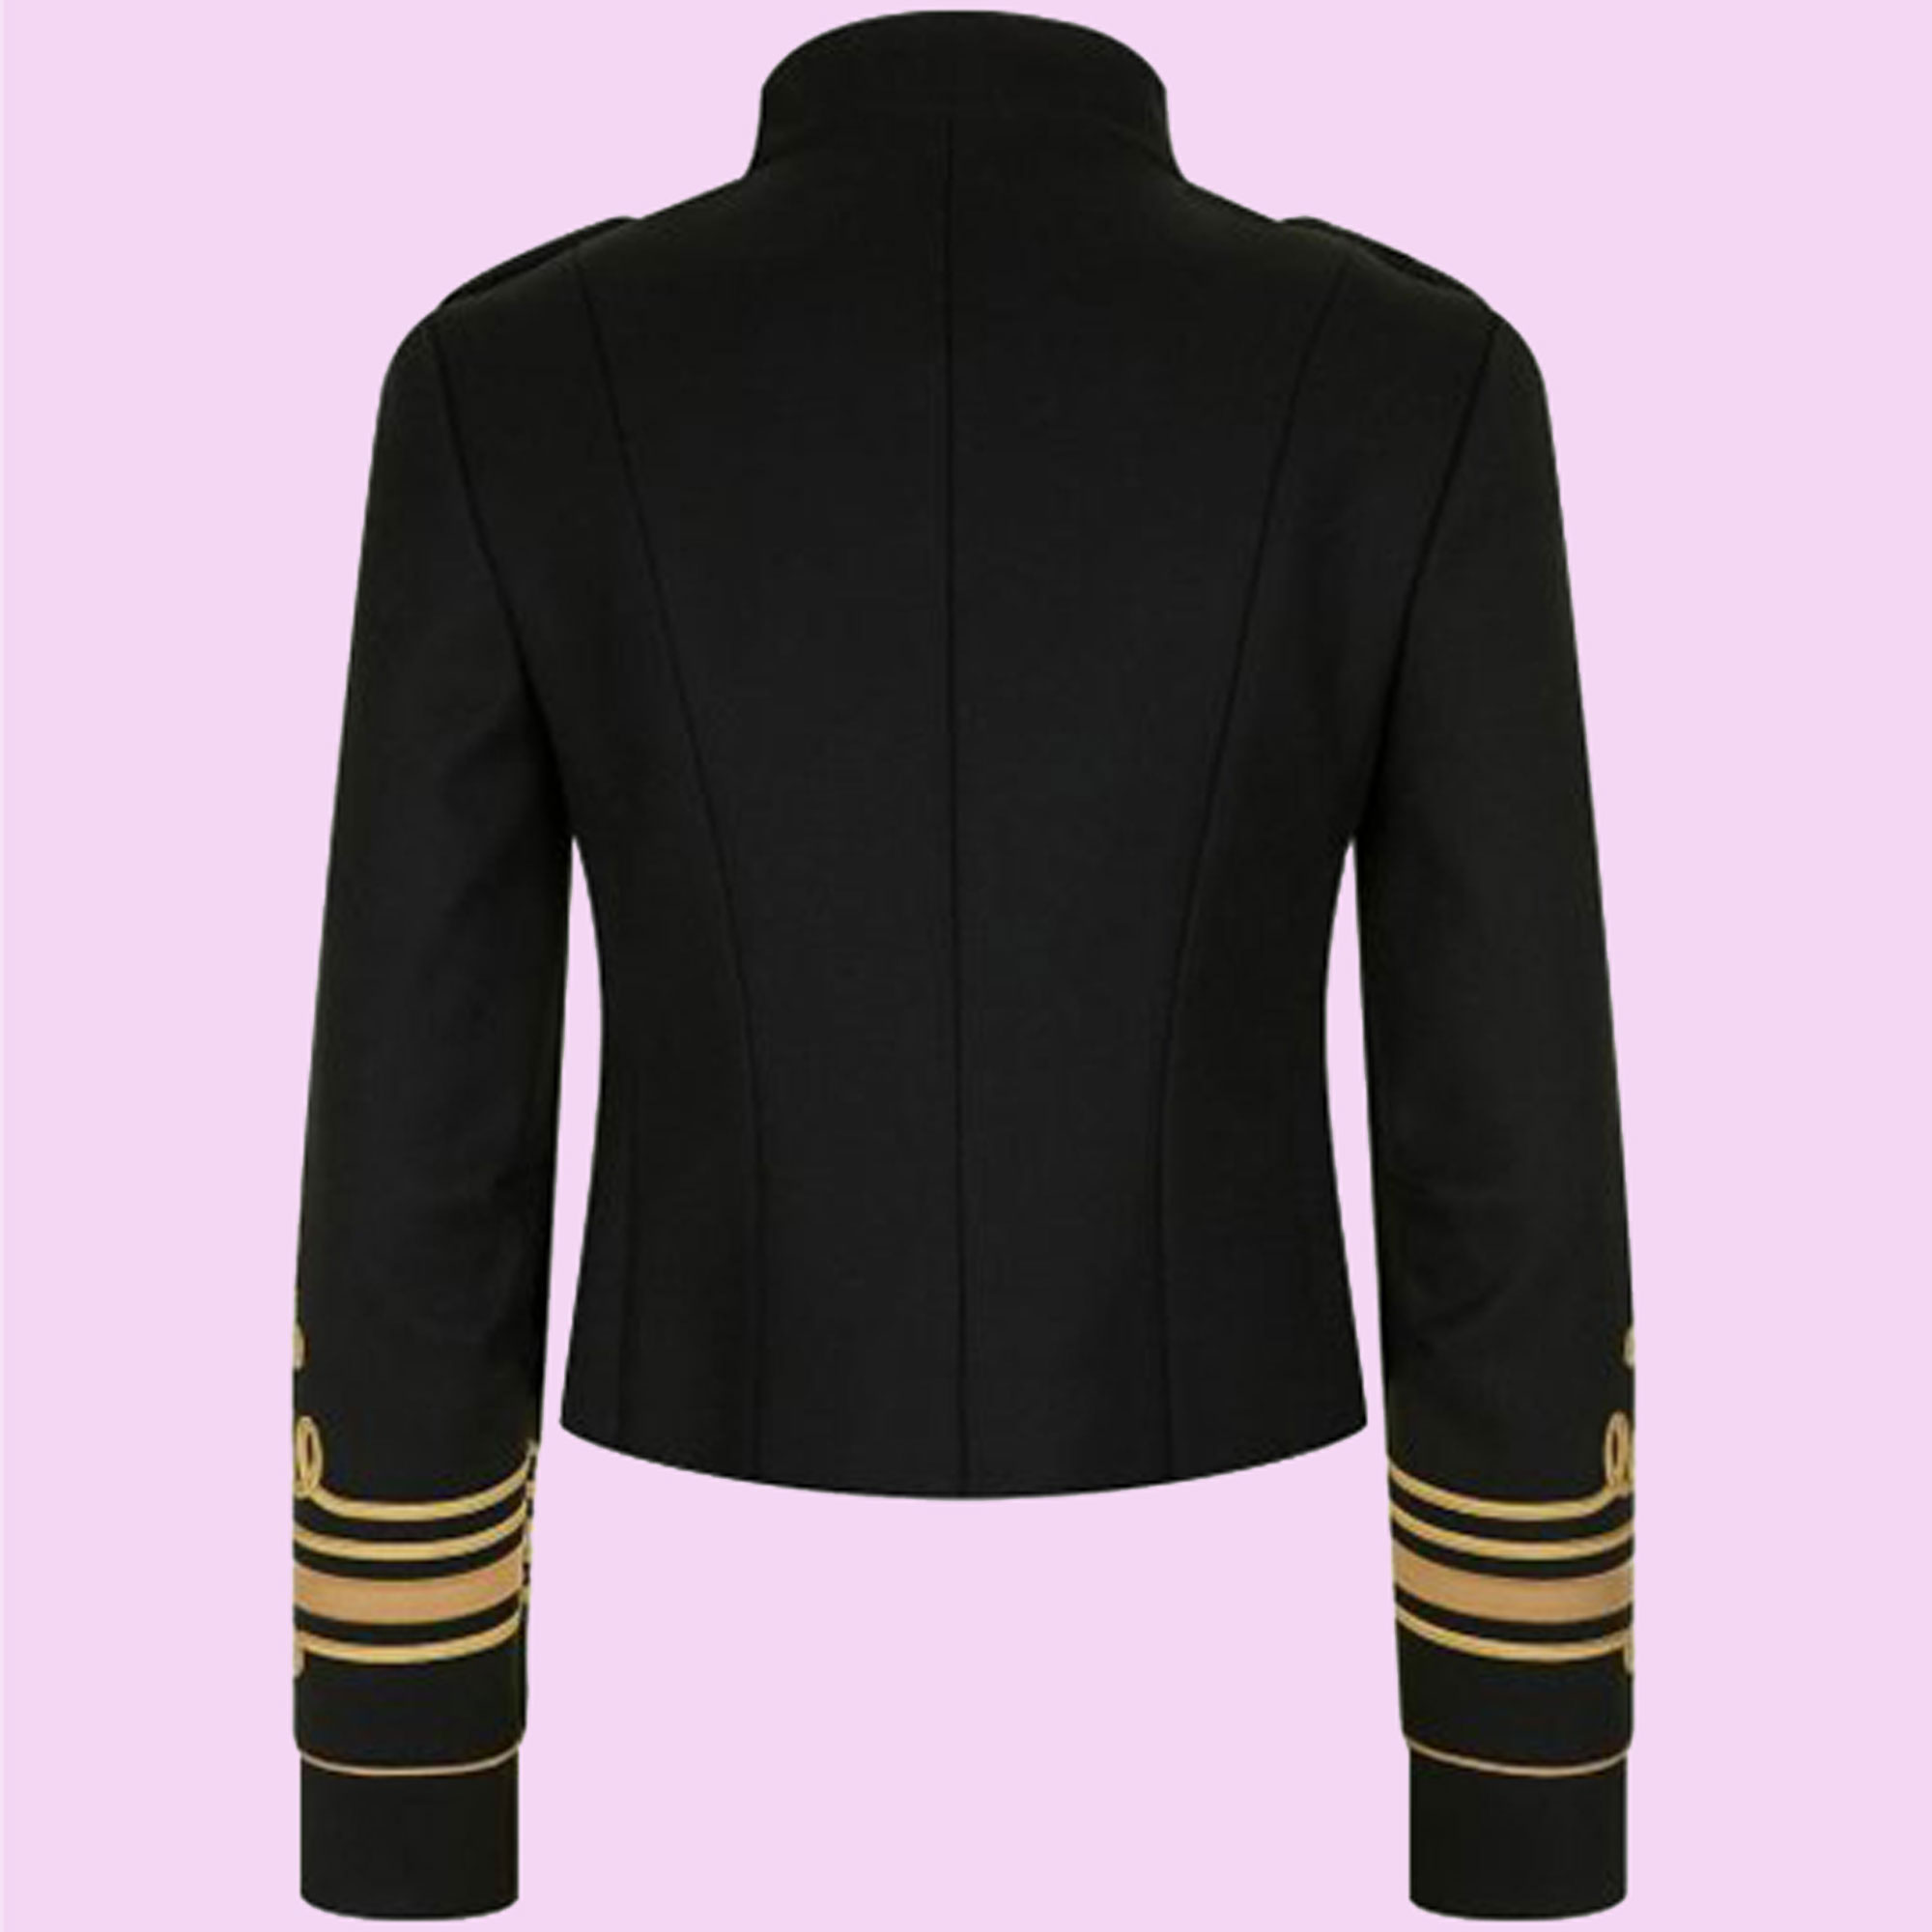 Ladies Black Officer's Military Coat Braided Jacketladies -  Denmark